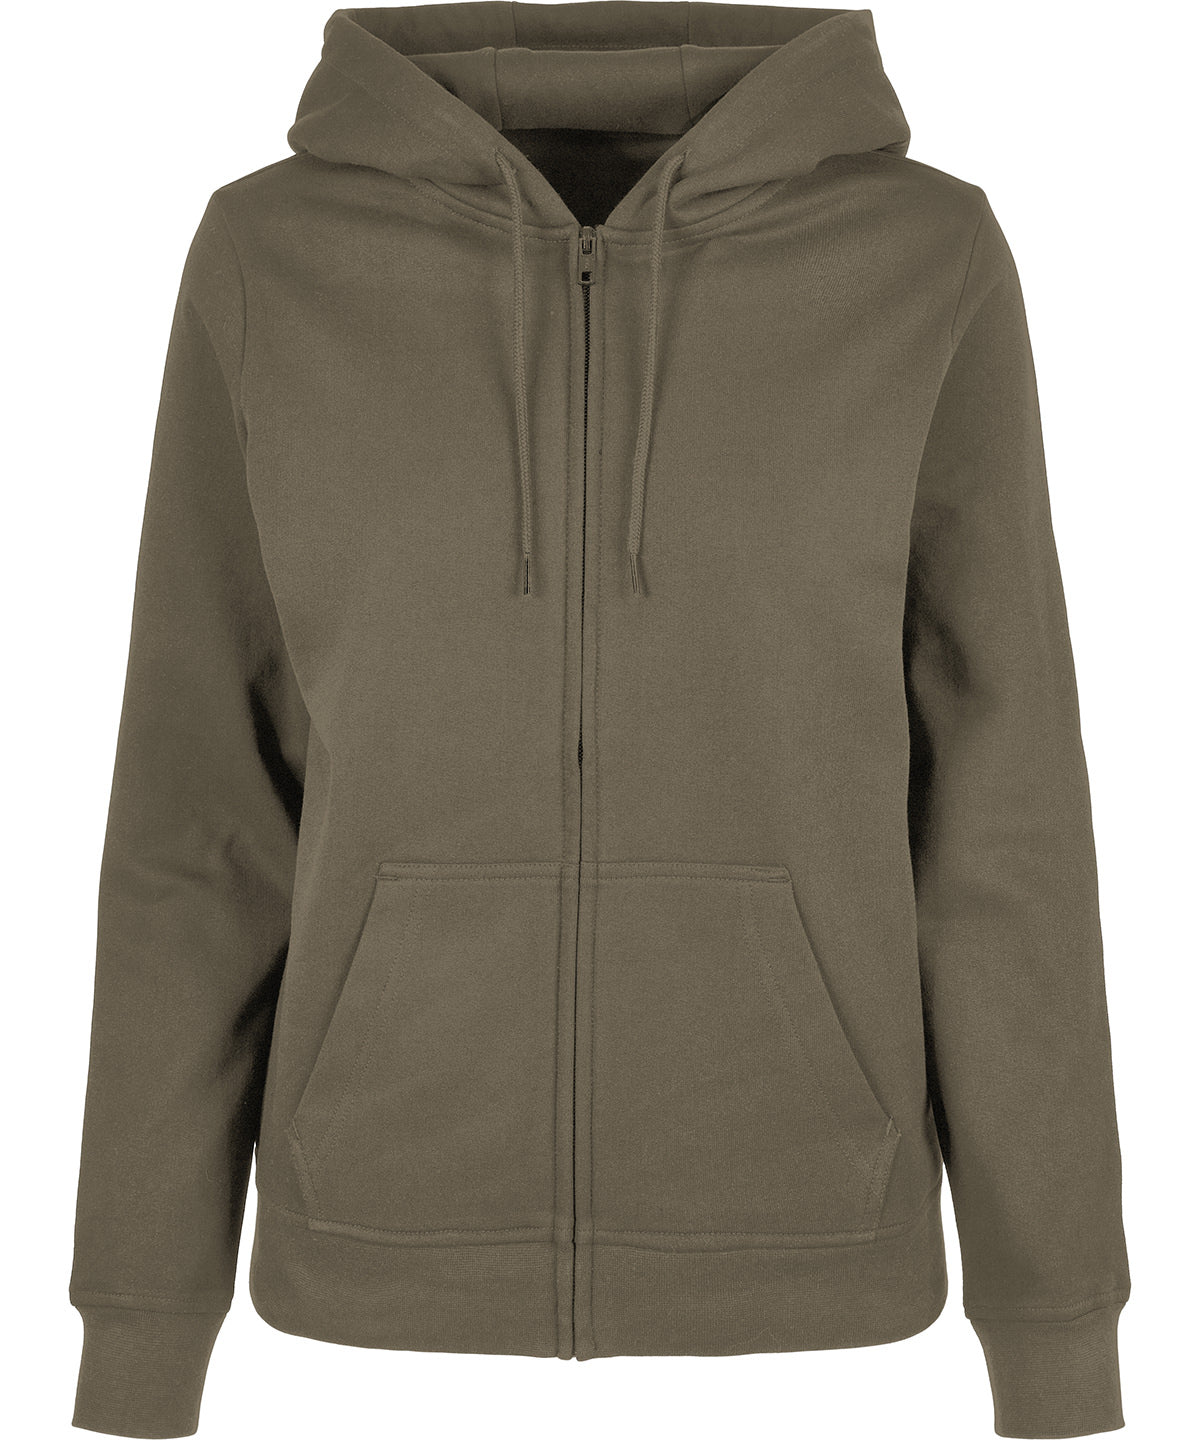 Personalised Hoodies - Black Build Your Brand Basic Women’s basic zip hoodie